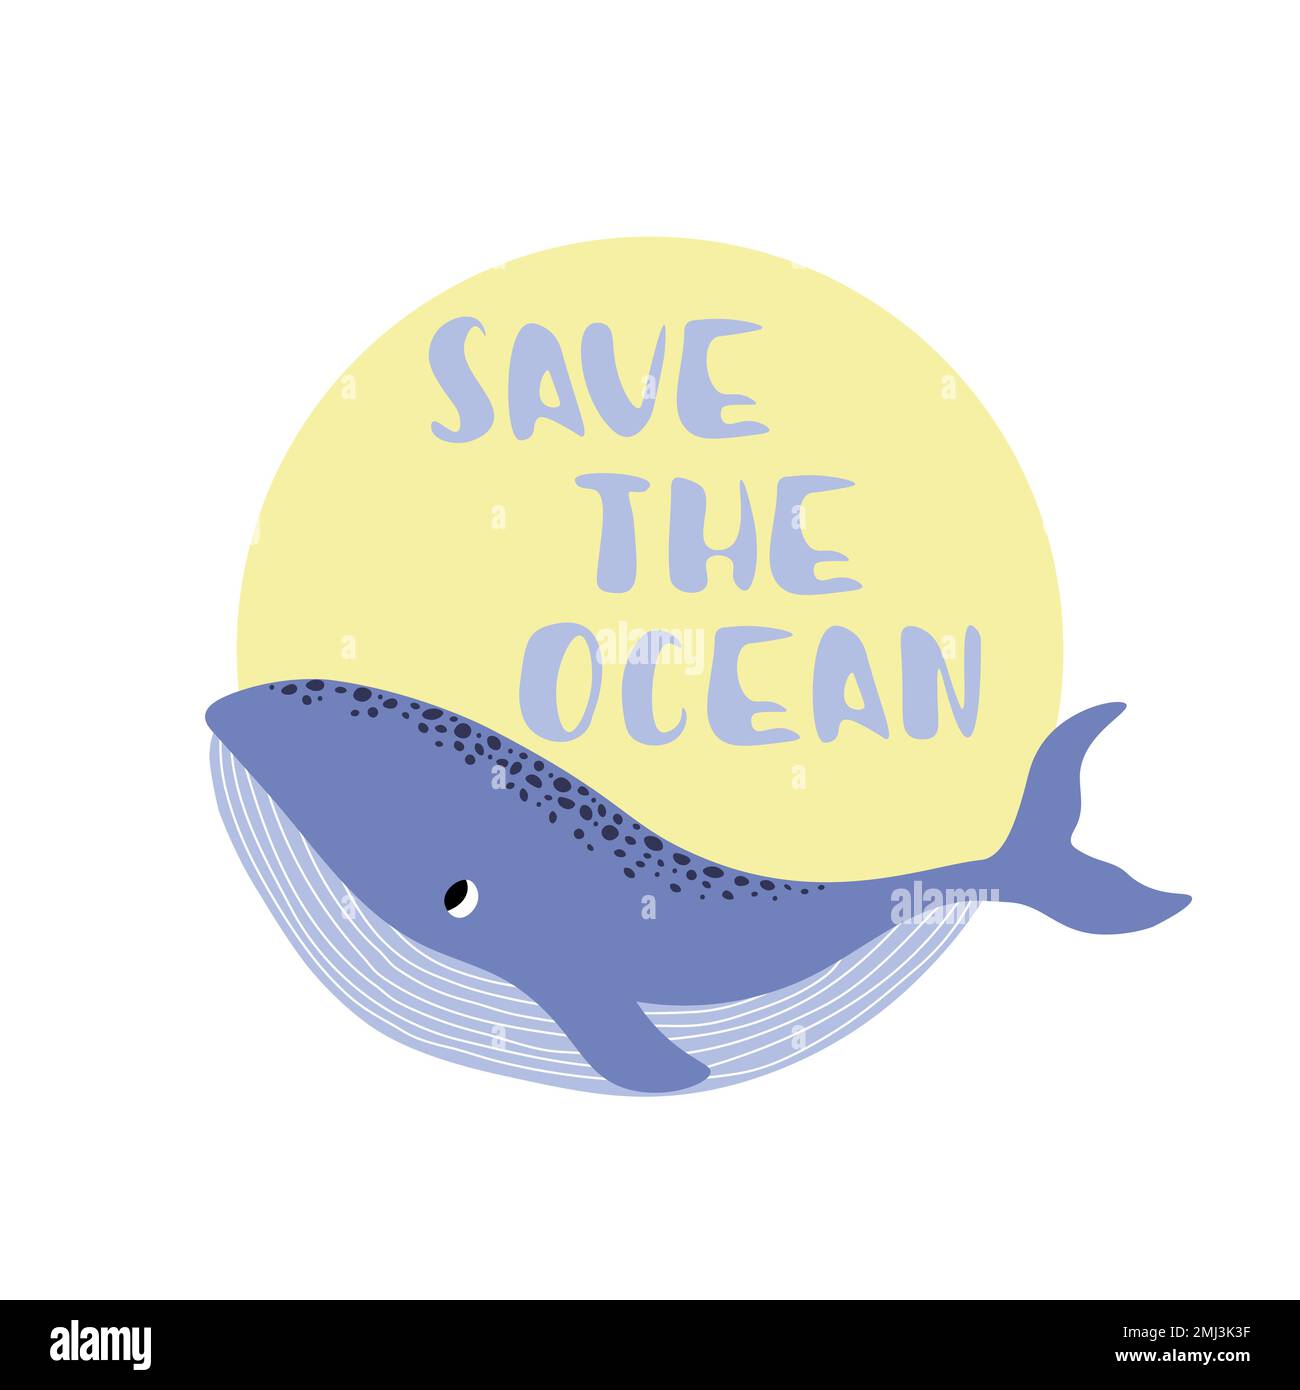 Vektor Ozean Illustration mit Wal. Save the Ocean - Moderne Beschriftung. Unterwassertiere. Ökologisches Design für Banner, Flyer, Postkarte, Website Stock Vektor